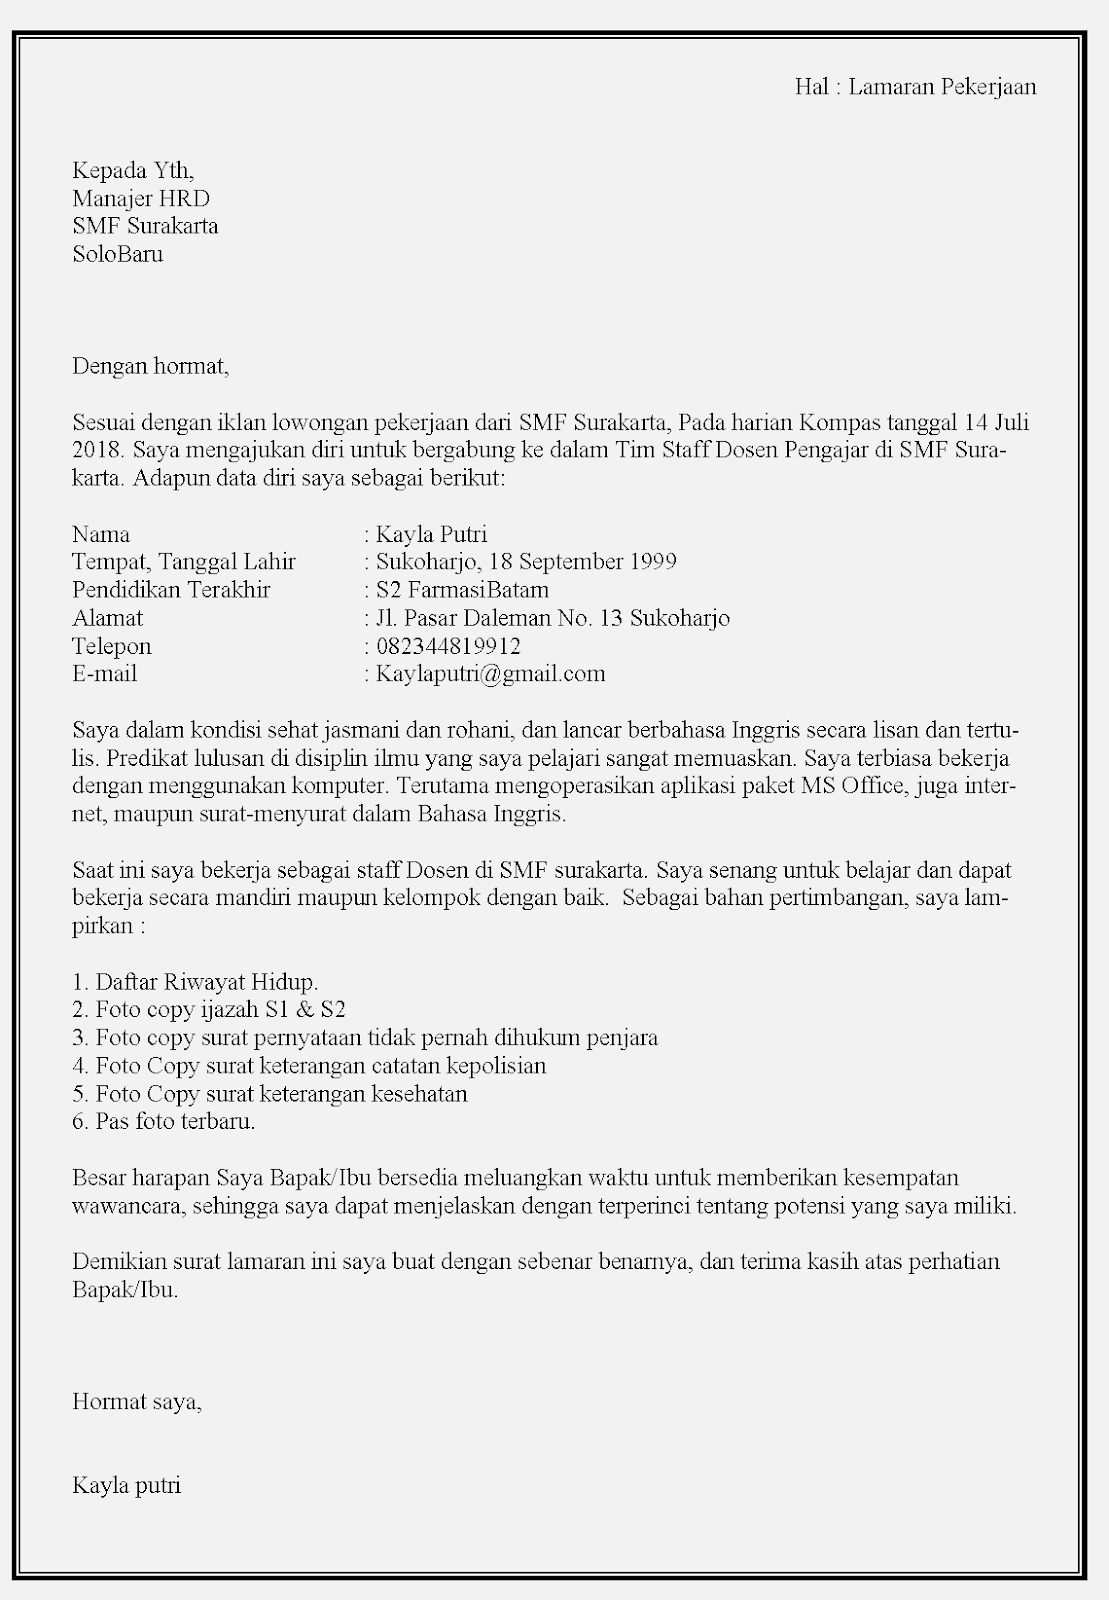 Contoh Surat Lamaran Kerja Universitas Indonesia